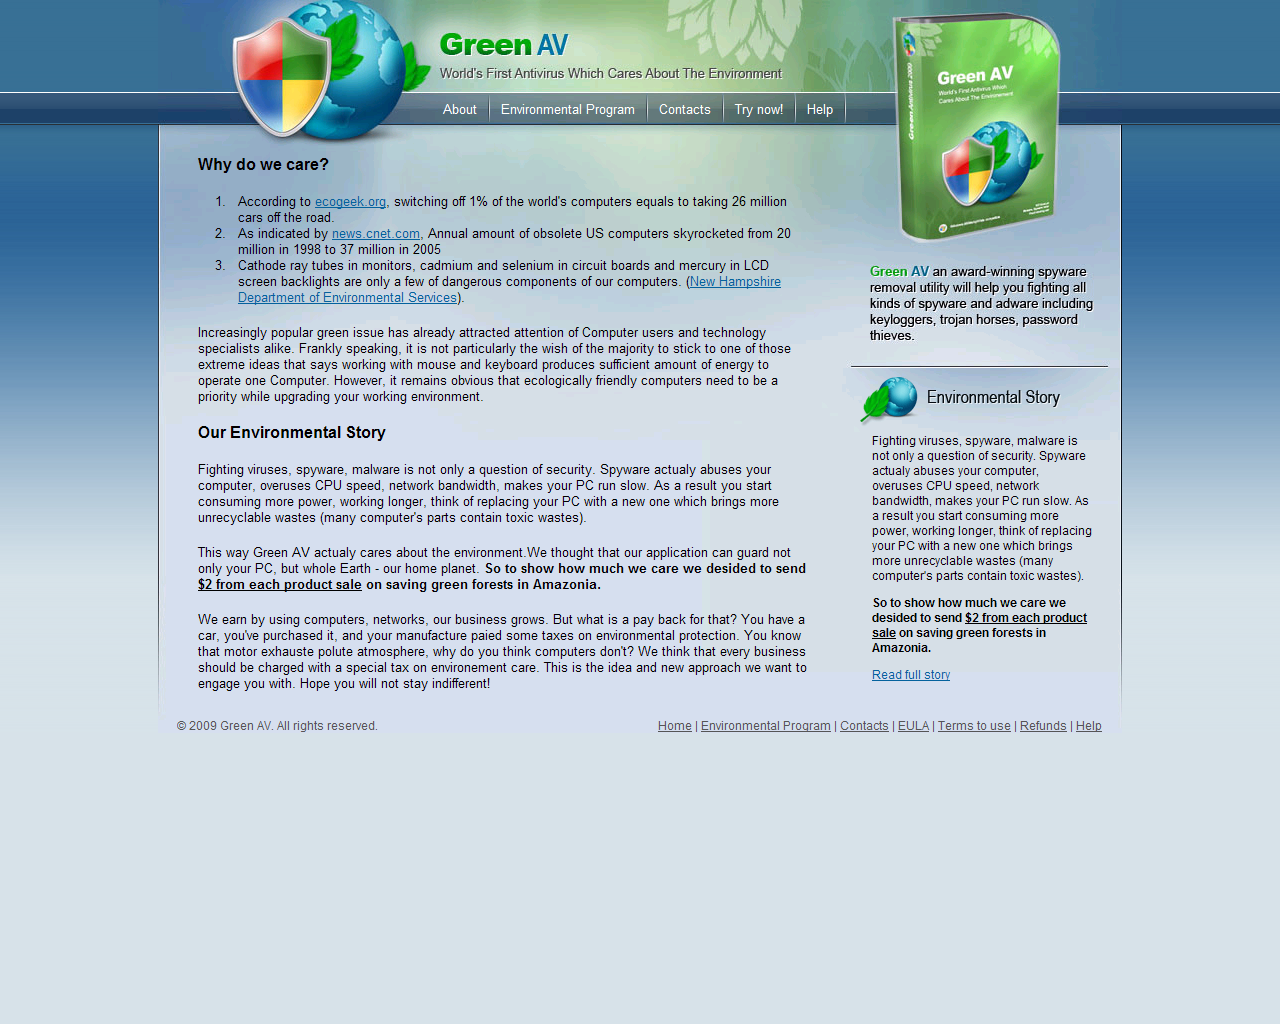 greenavscarewarefakesecuritysoftware.png